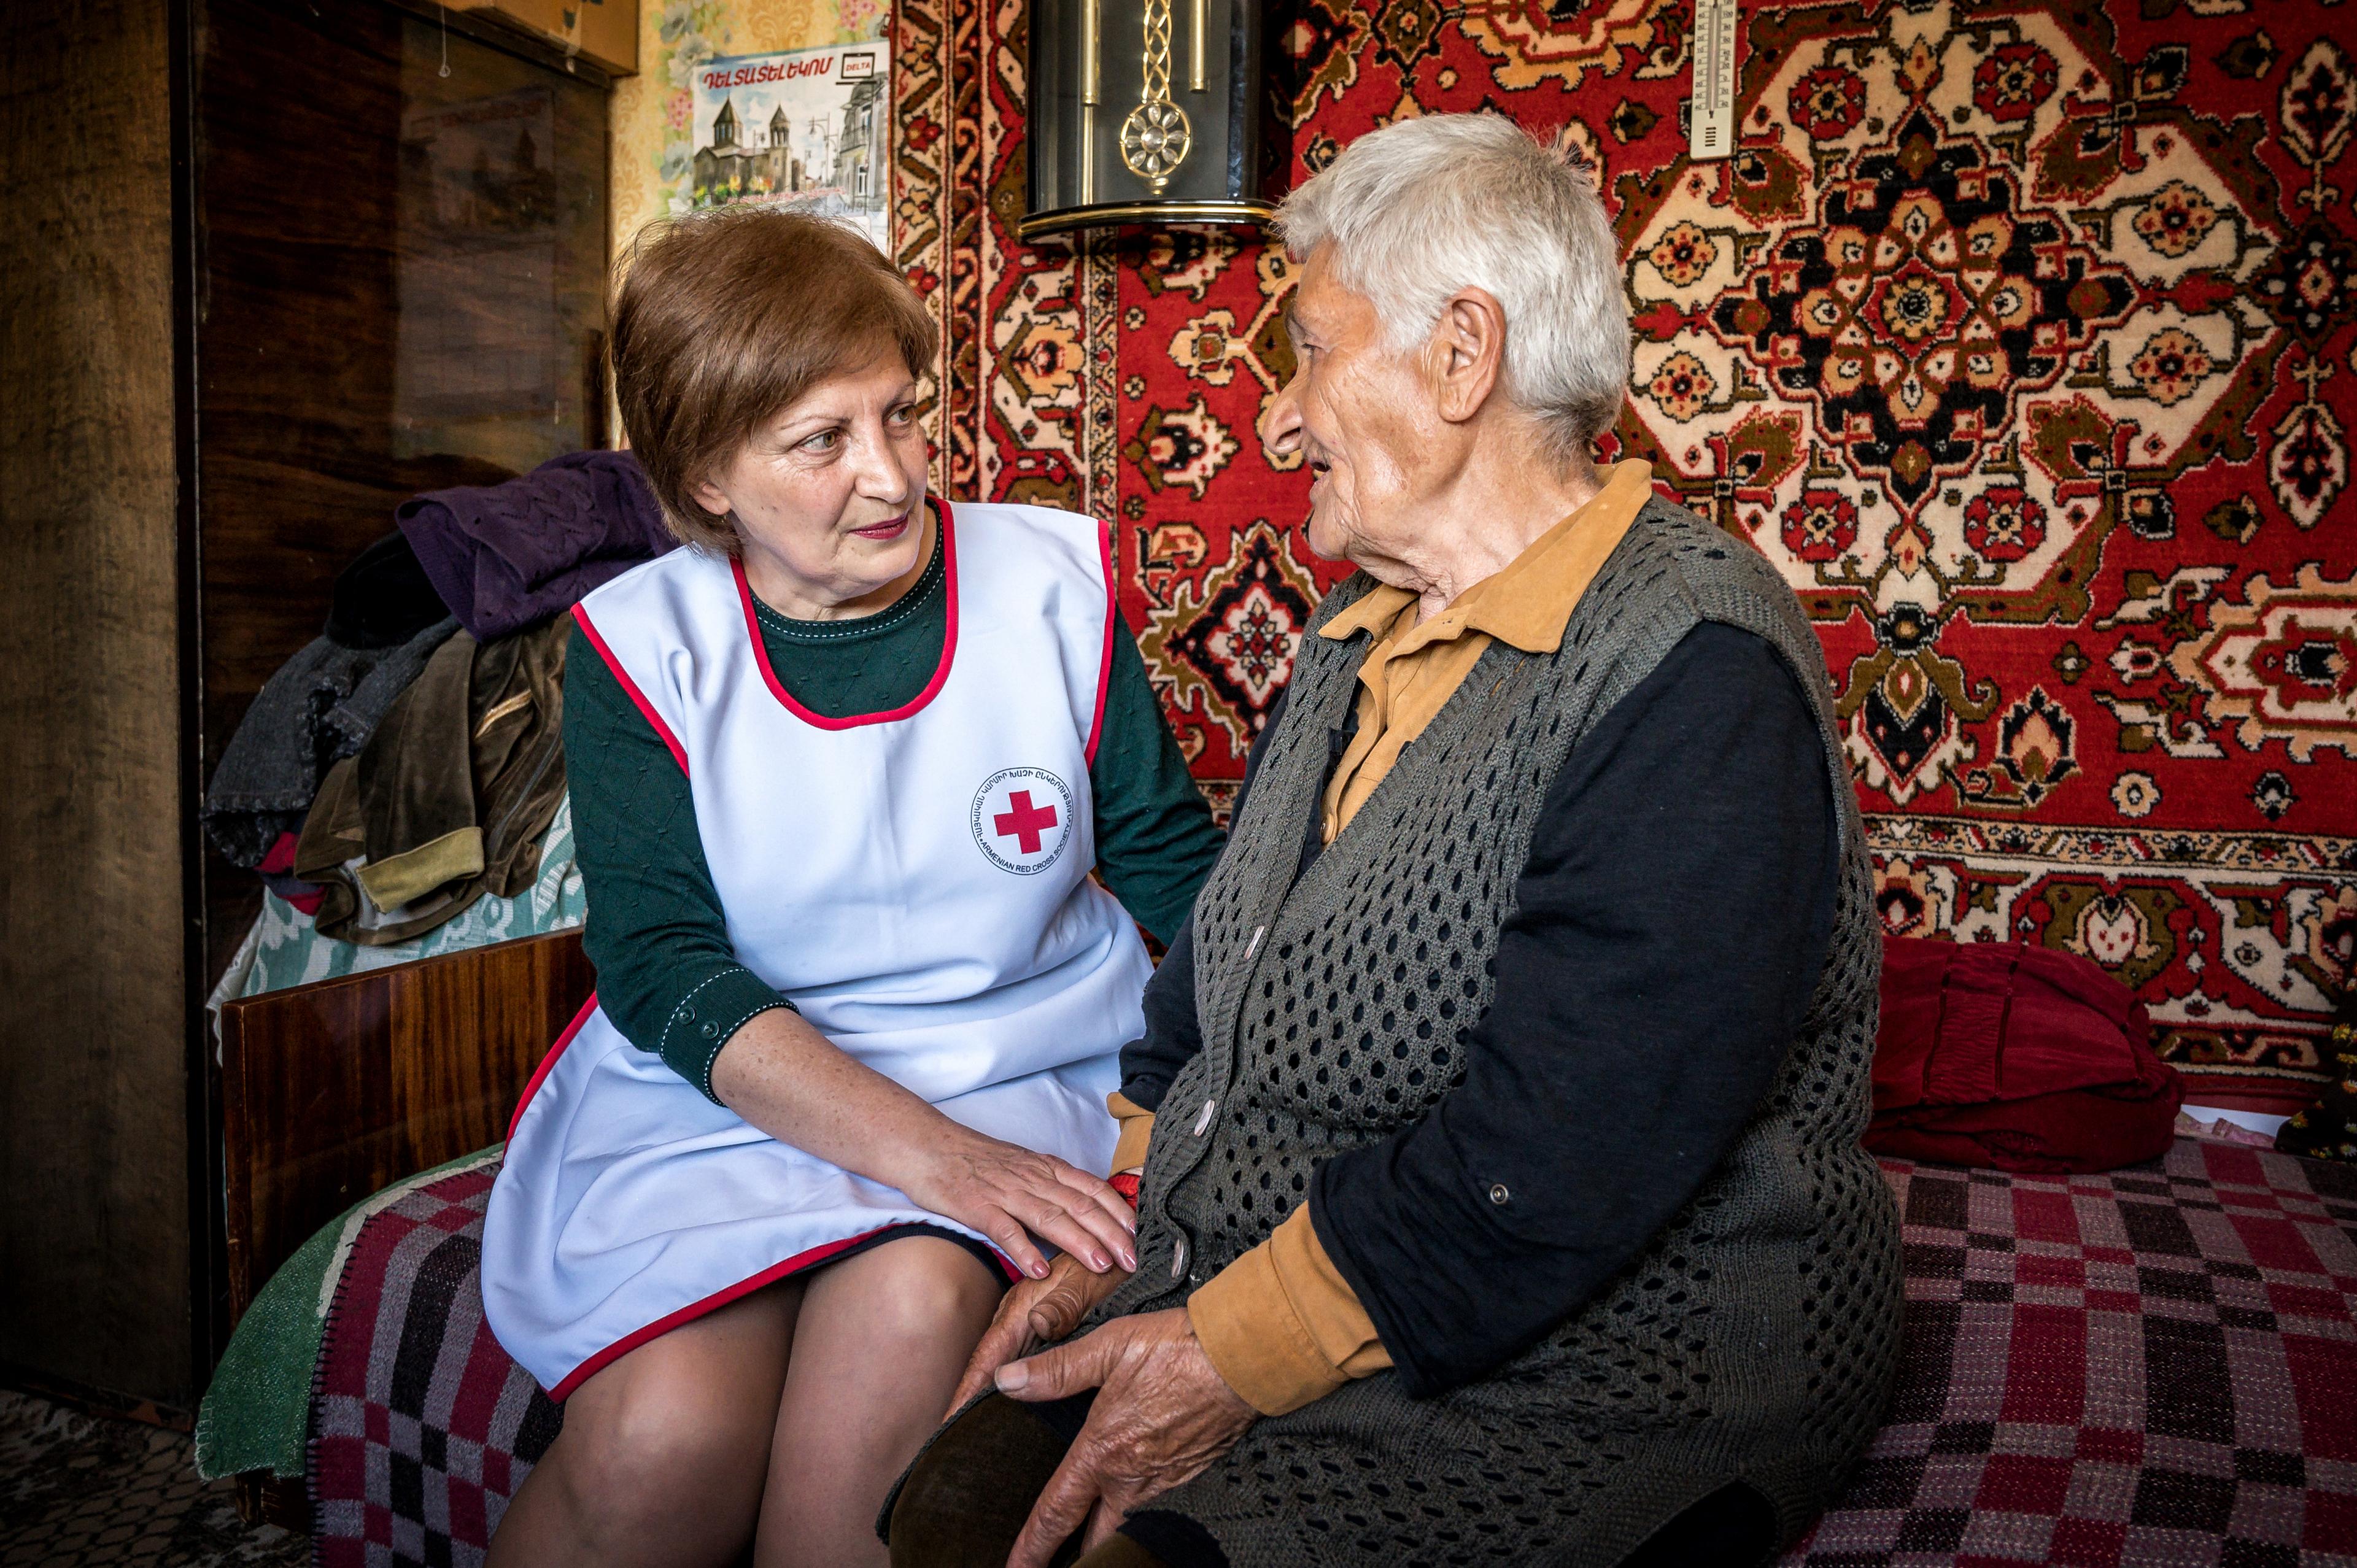 Una donna con un gilet della Croce Rossa siede di fronte a una signora anziana. Sono seduti su un letto e alle loro spalle sono appesi dei tappeti alla parete.